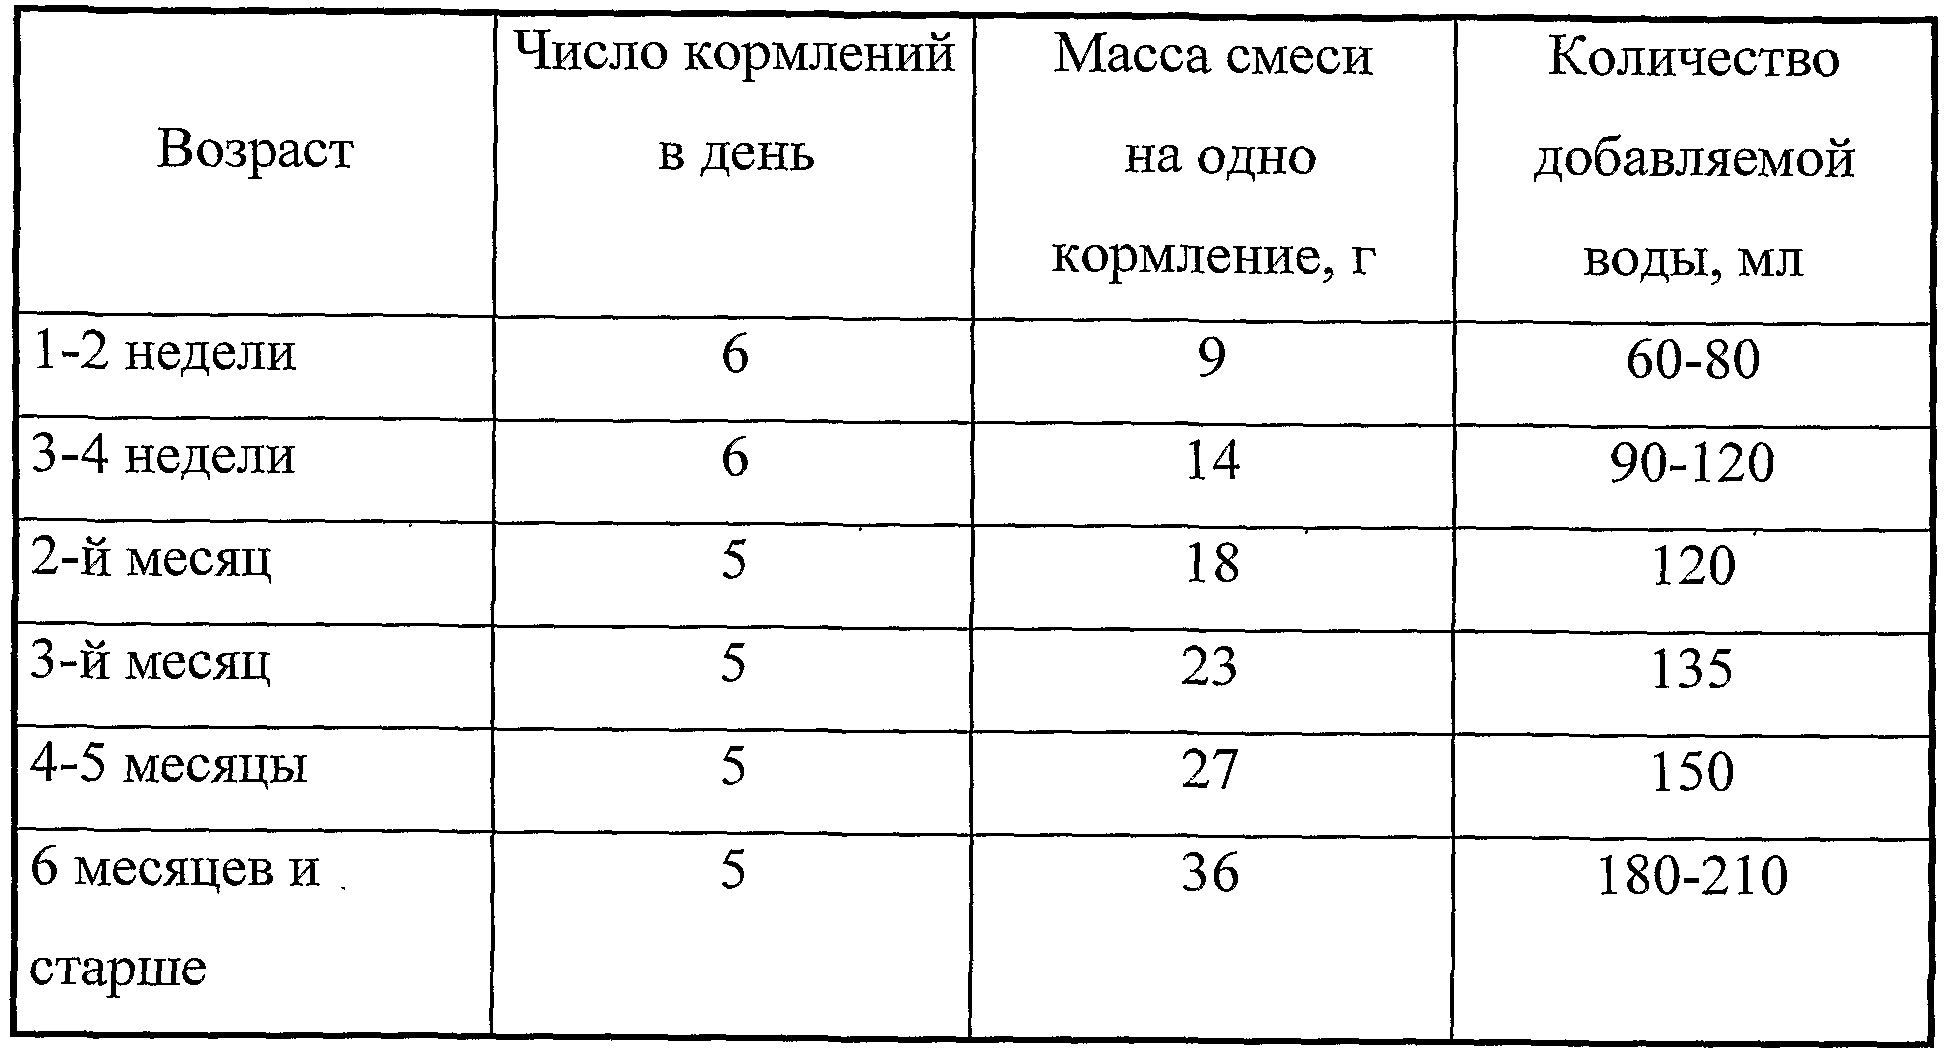 Таблица количества смеси и воды при кормлениях